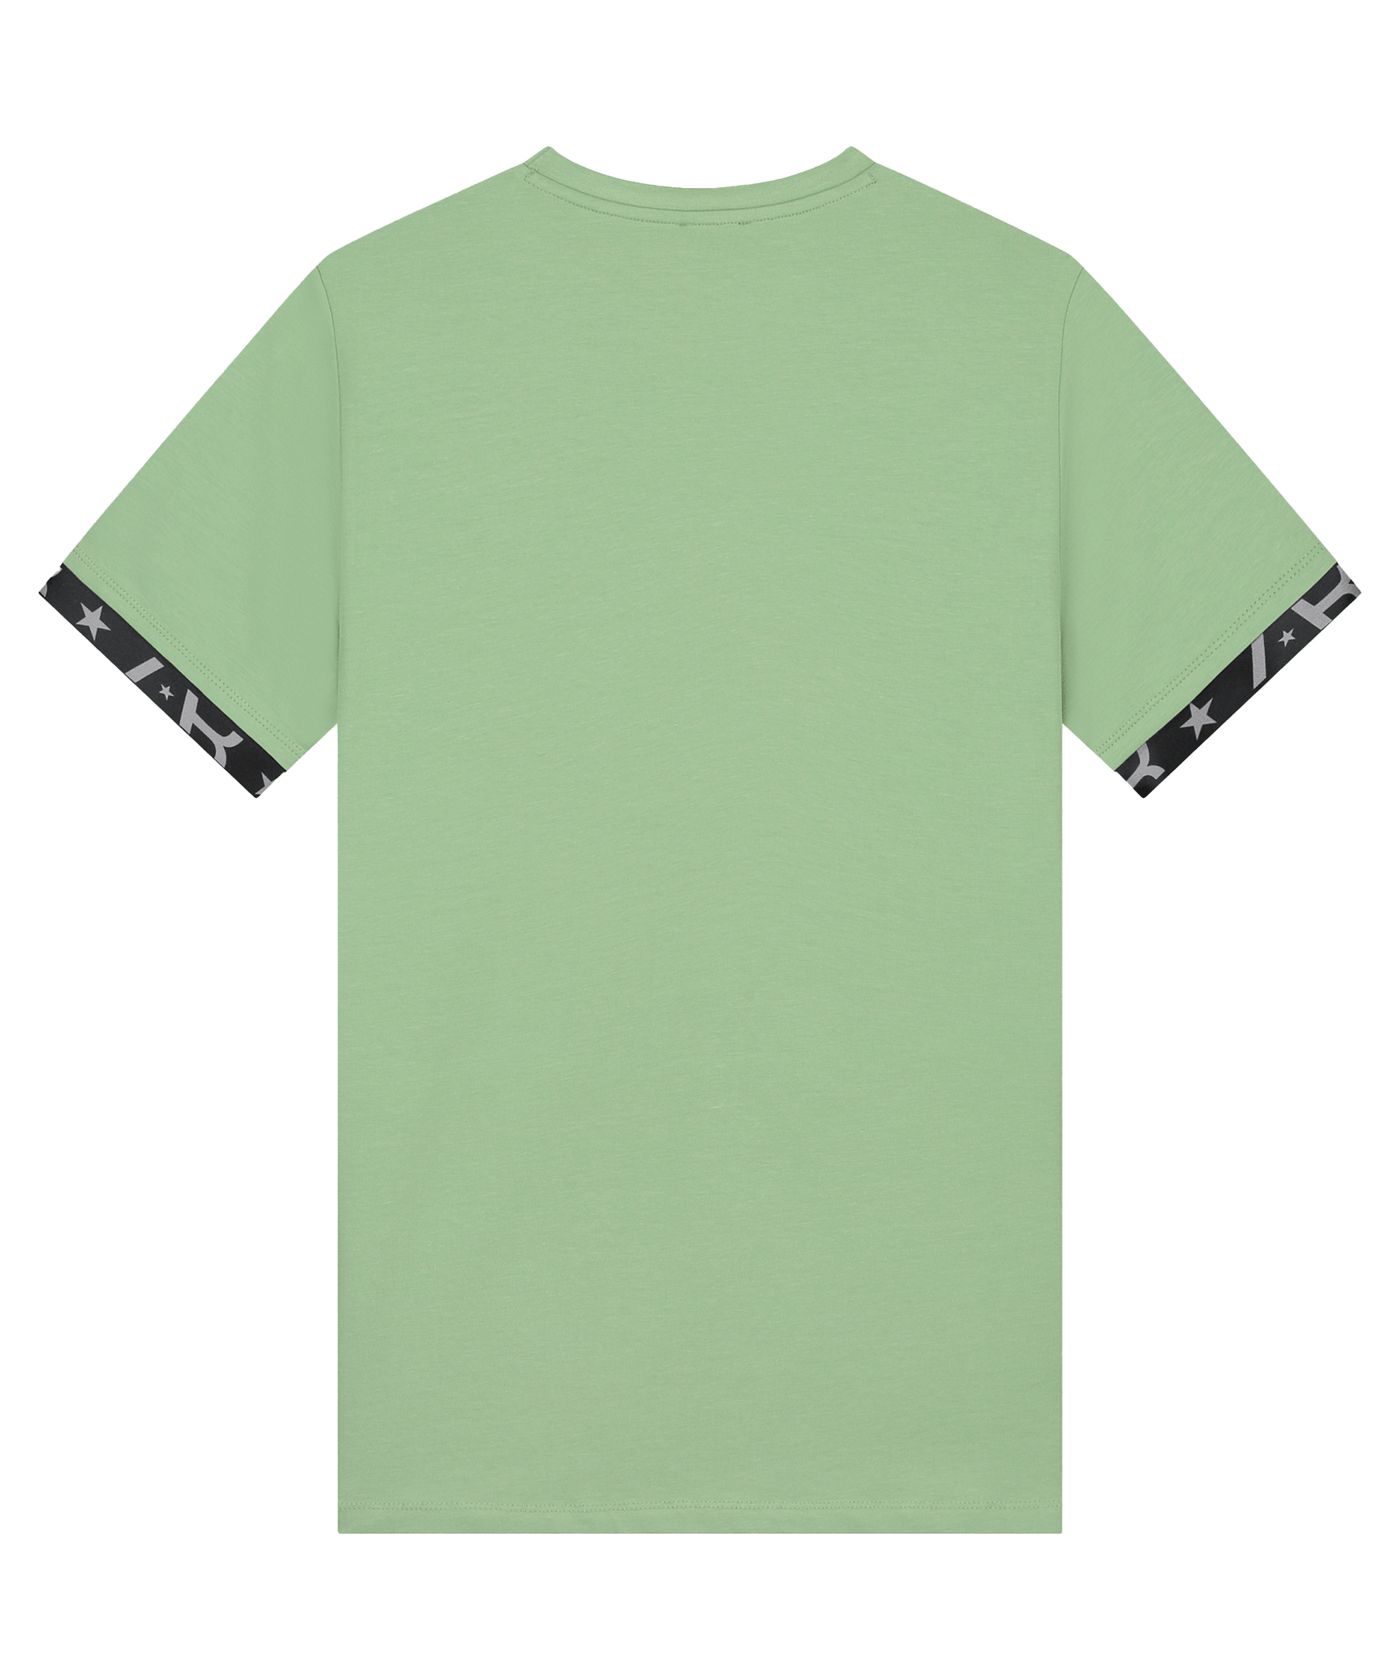 AB Lifestyle - Flag - T-shirt - Basil